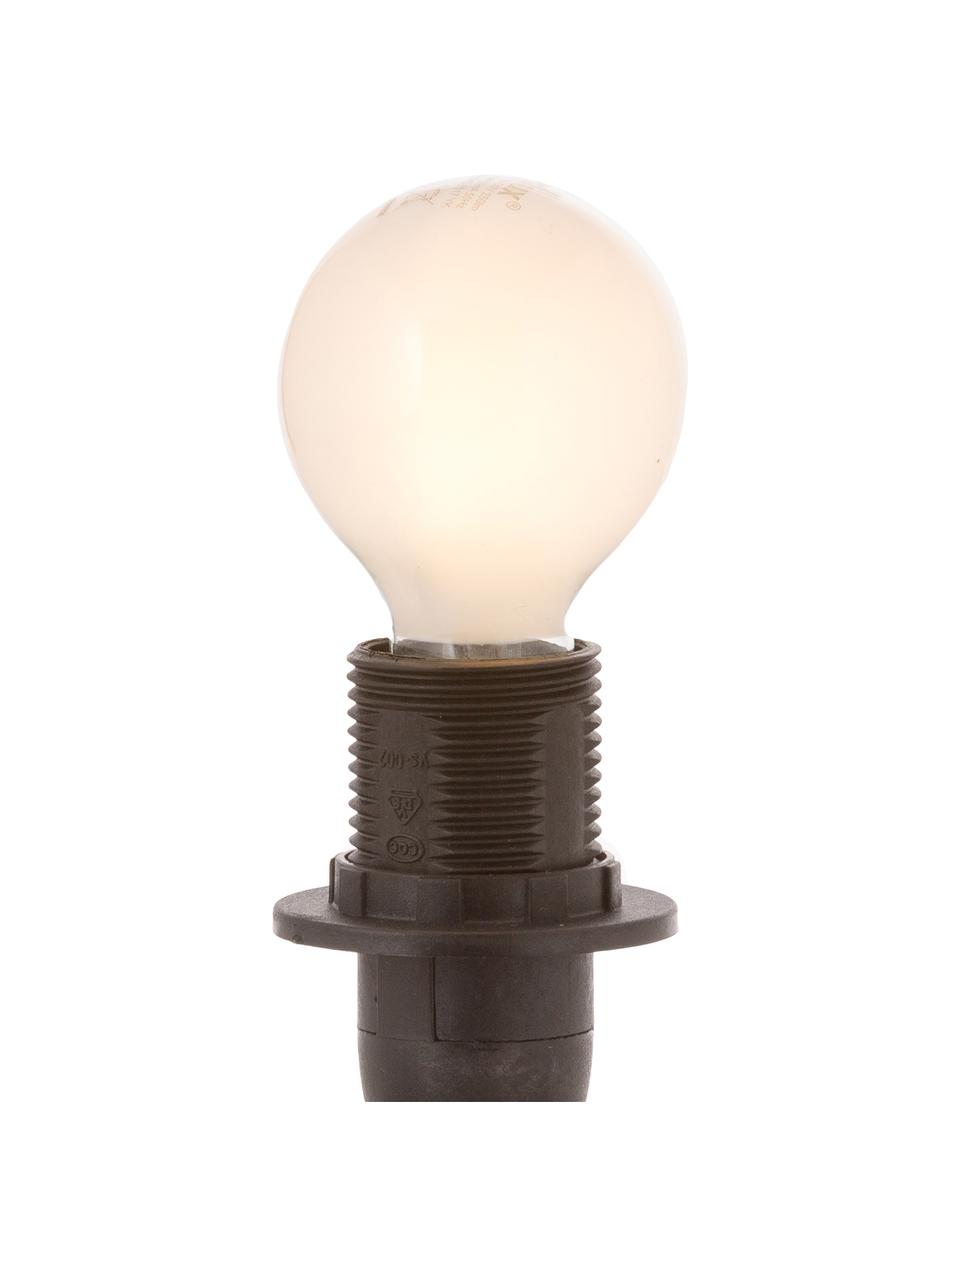 E14 Leuchtmittel, 2.5W, warmweiß, 1 Stück, Leuchtmittelschirm: Kunststoff, Leuchtmittelfassung: Aluminium, Weiß, Ø 5 x H 8 cm